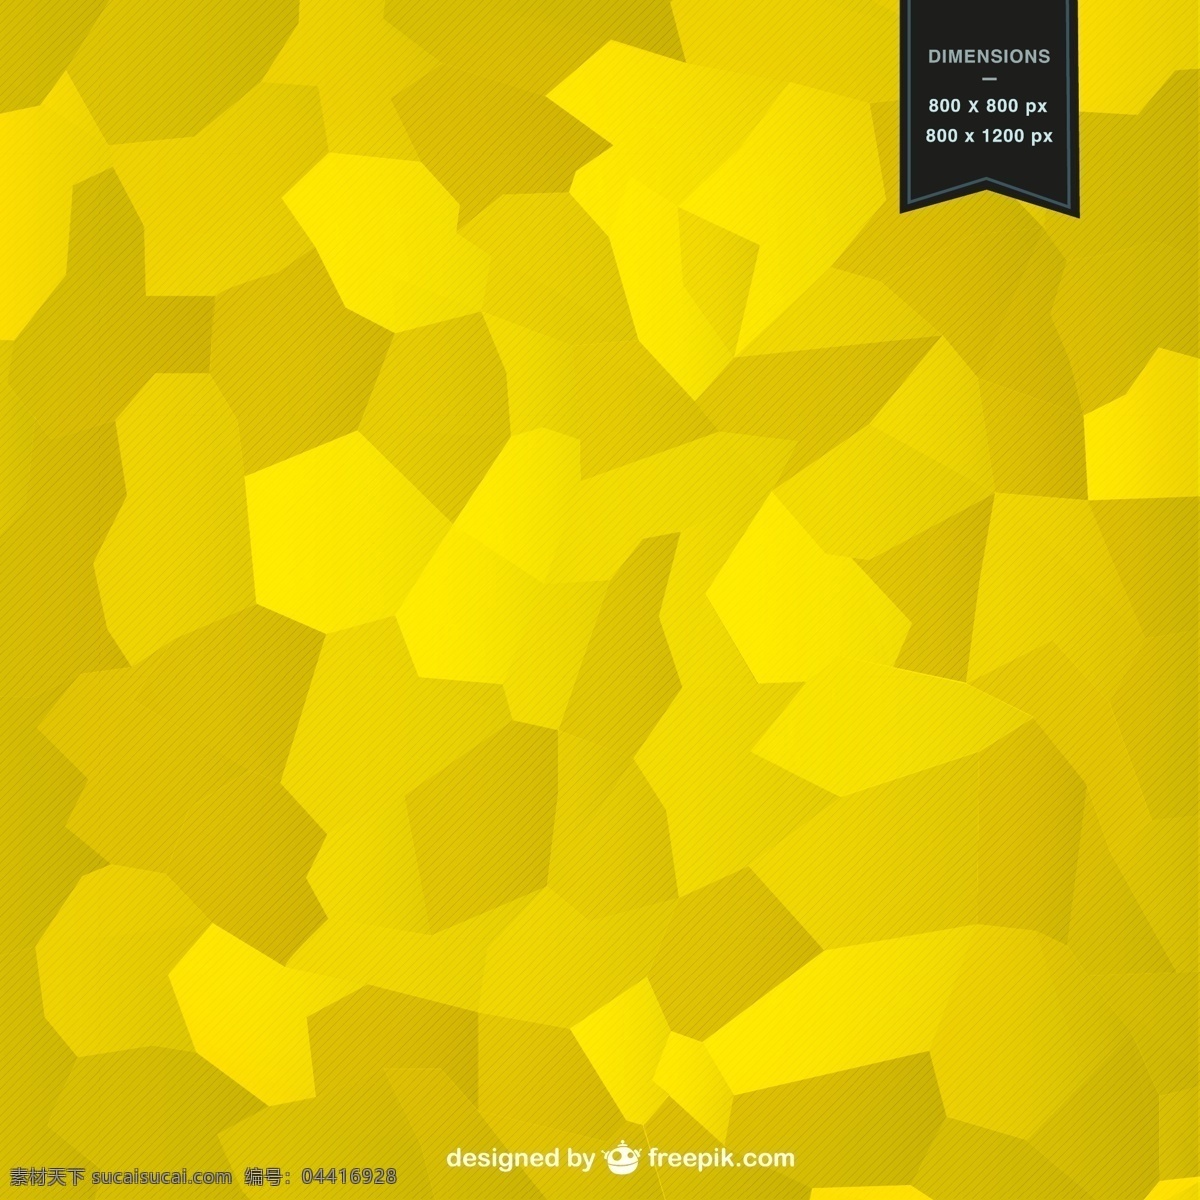 黄 马赛克 背景 抽象 几何 模板 形状 壁纸 布局 几何背景 黄色 黄色的背景 抽象设计 几何图形